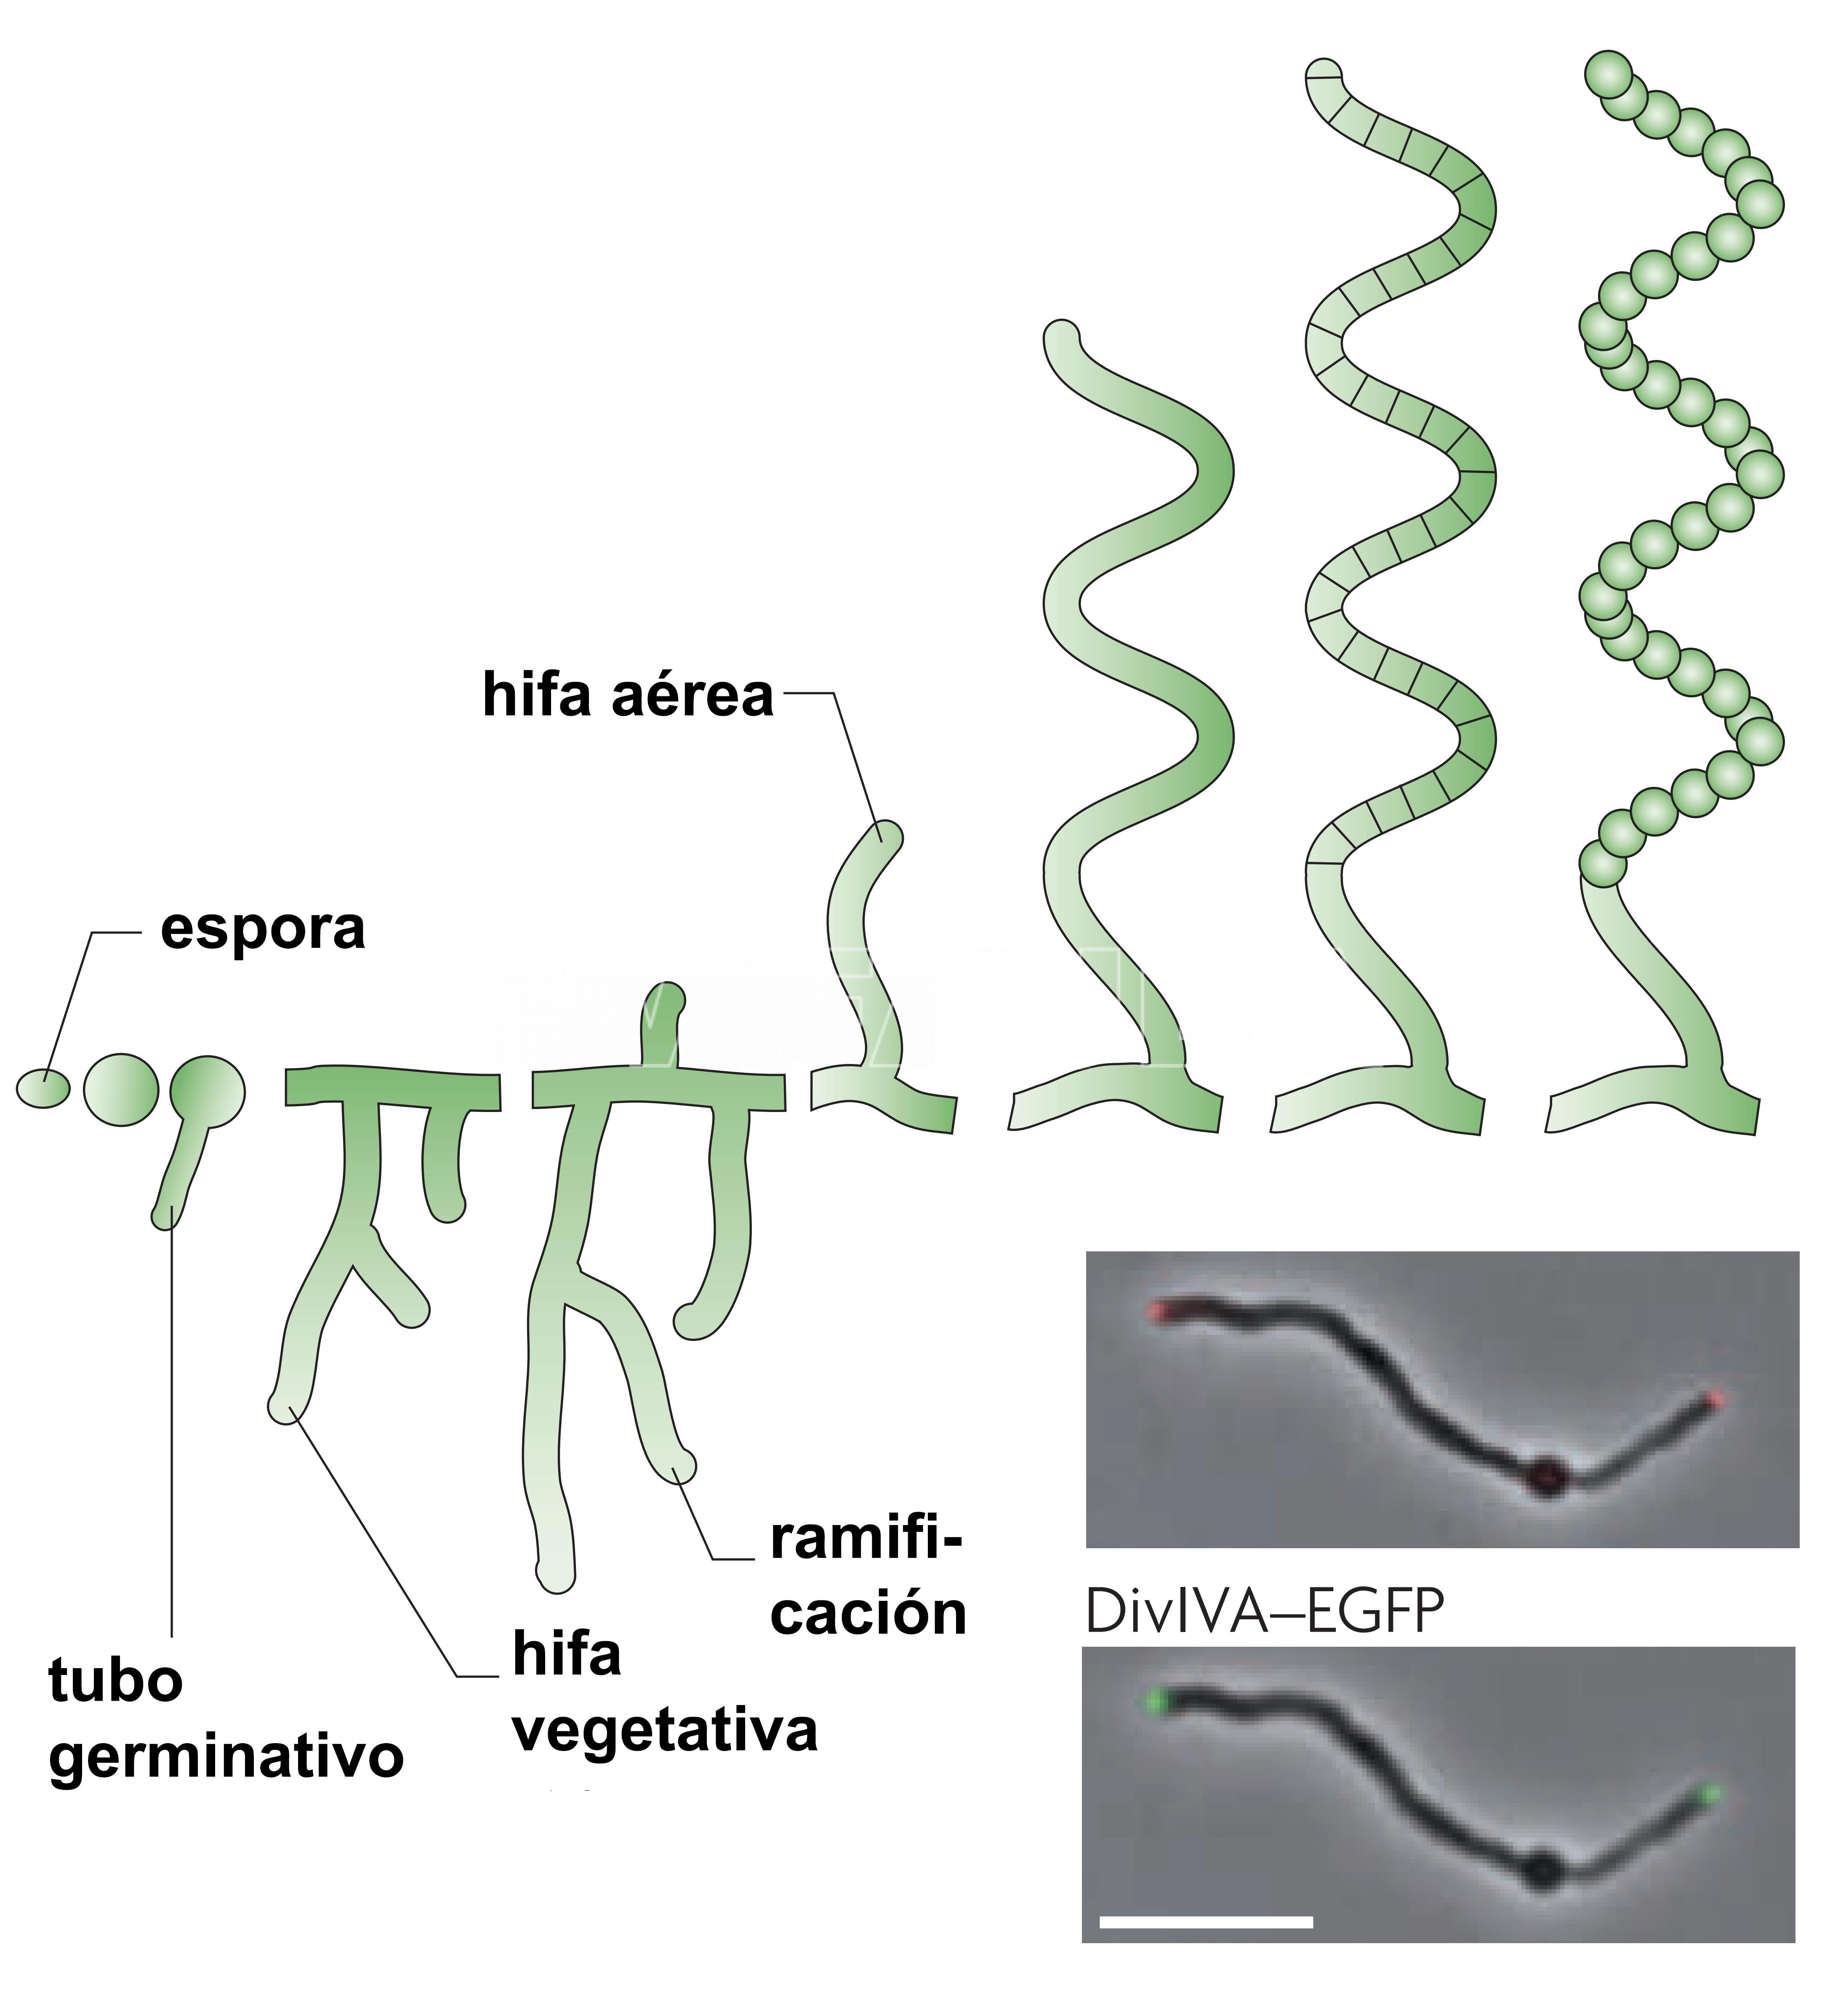 Ciclo de vida de desarrollo de Streptomyces coelicolor. La barra de escala representa 6 µm. Autores: Flärdh y Buttner, 2009.